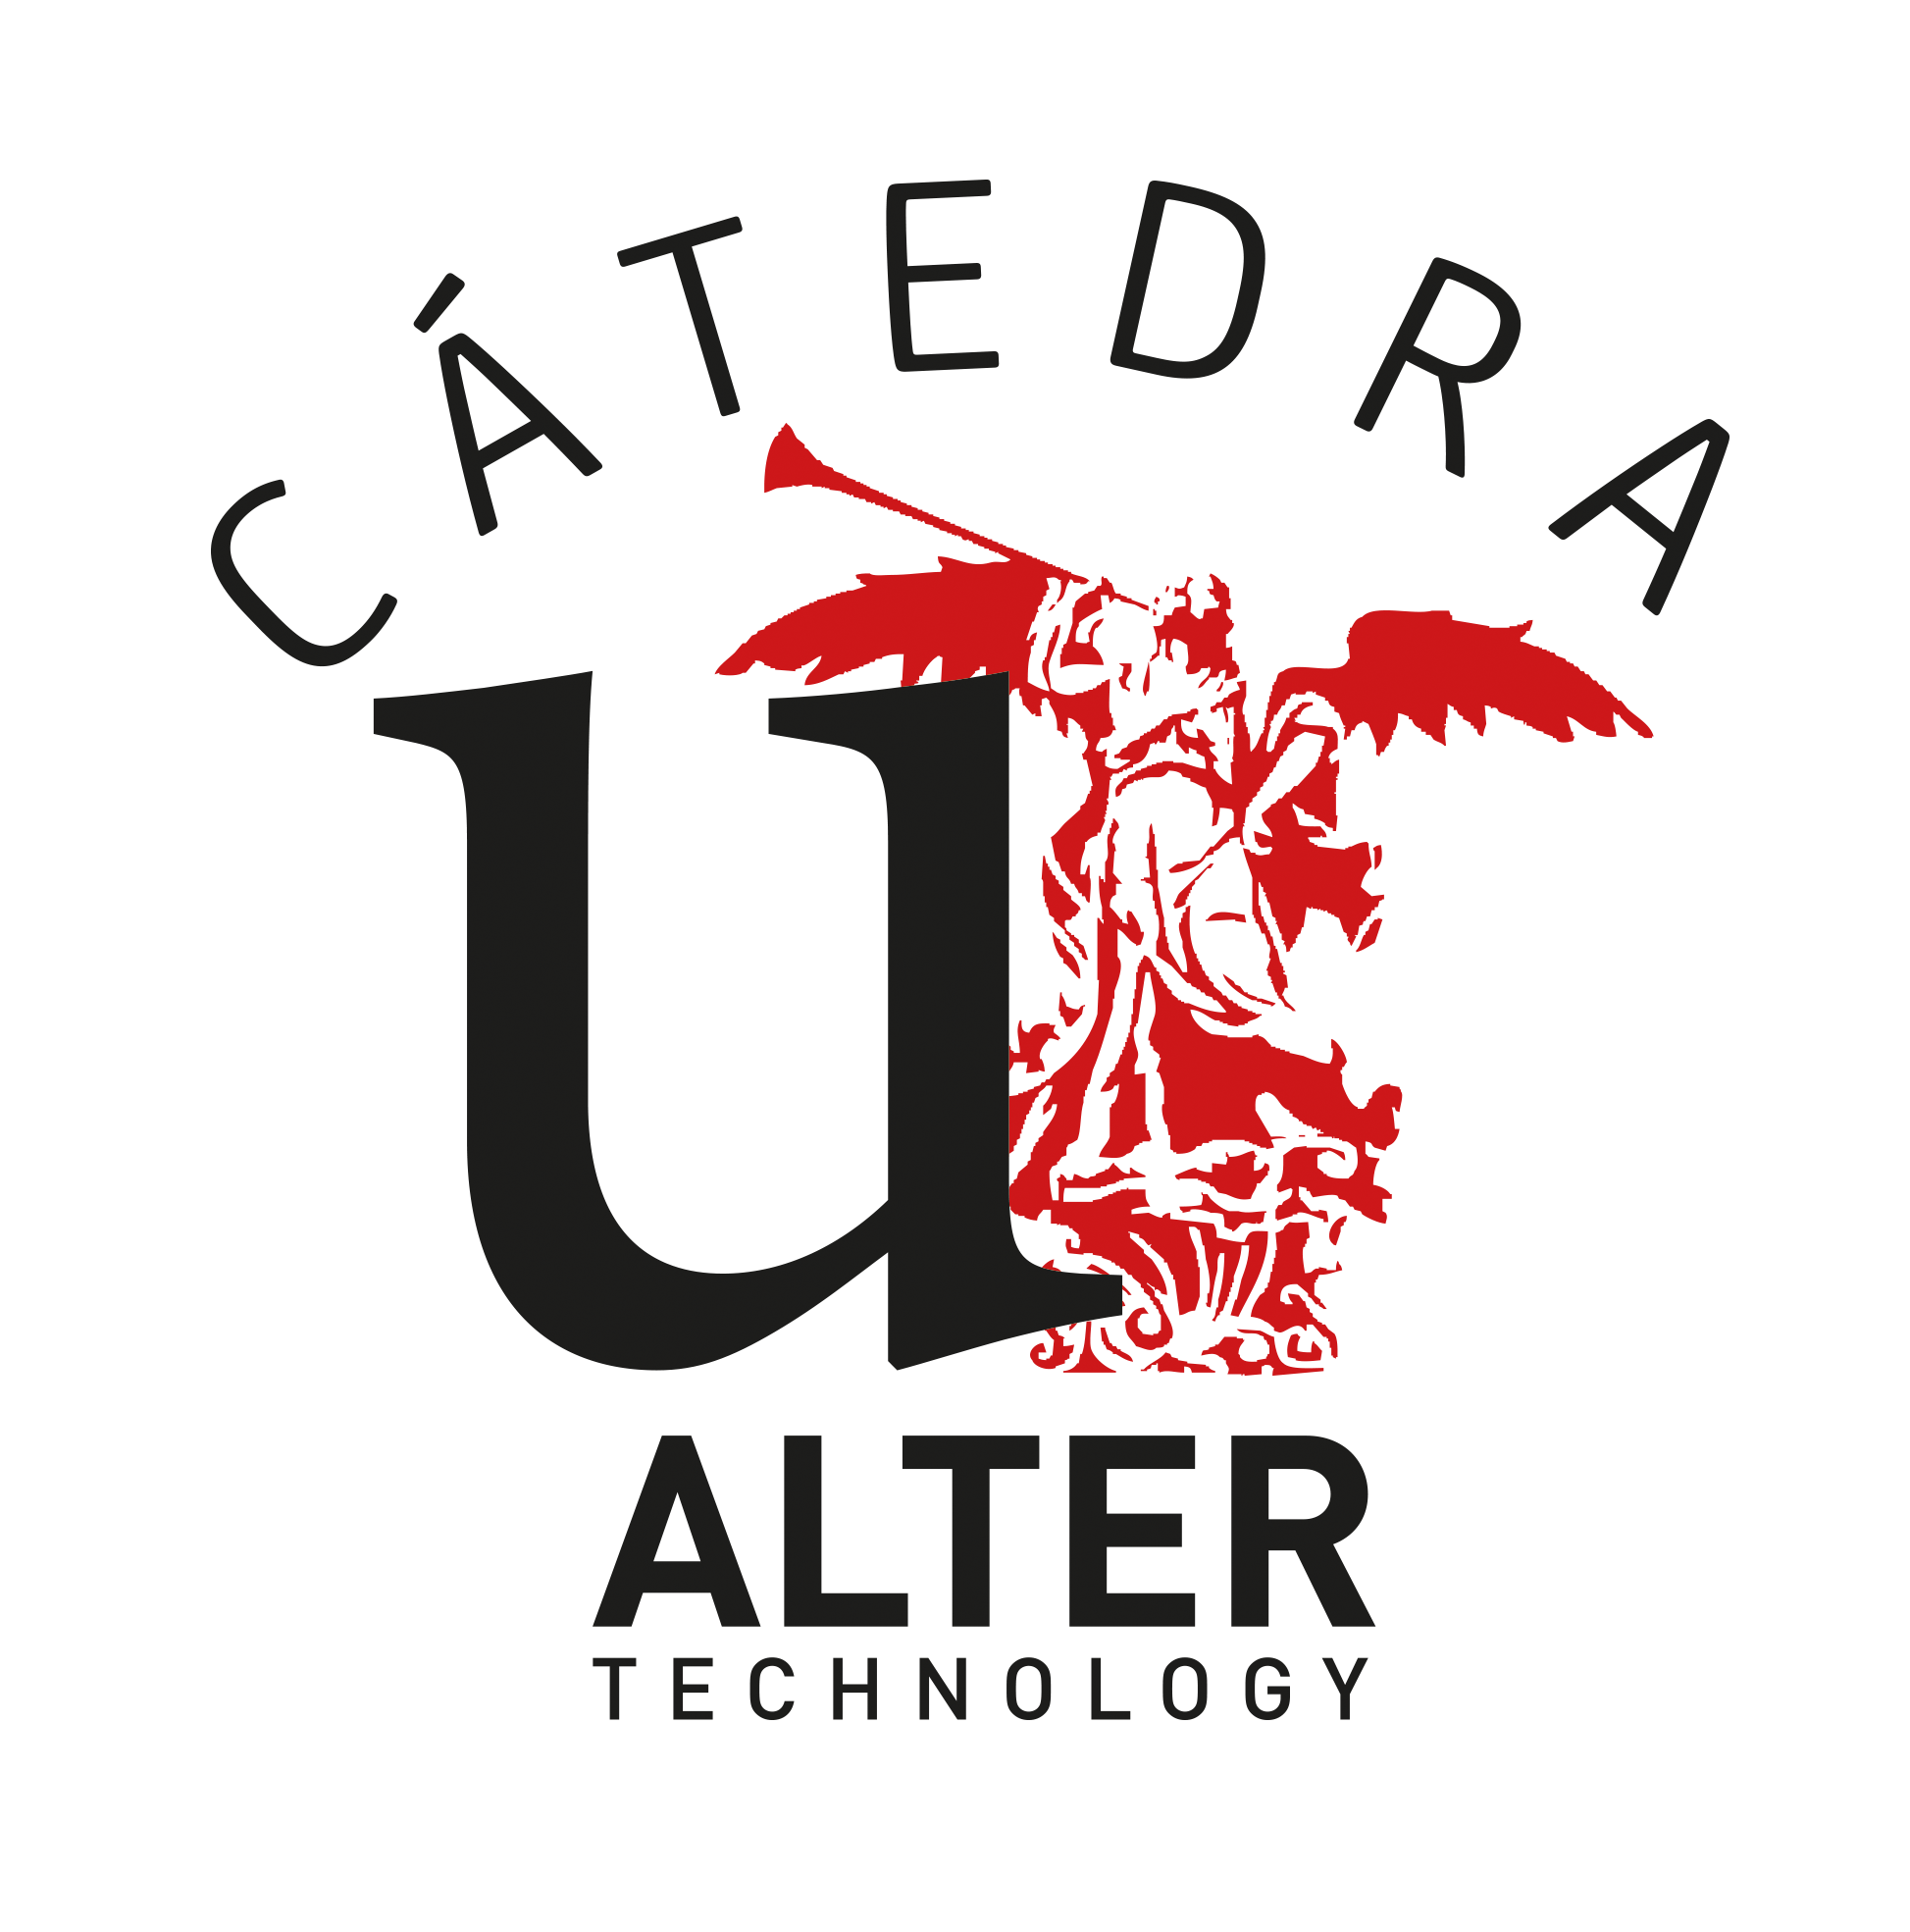 logo CATEDRA ALTER TECHNOLOGY - Universida de Sevilla